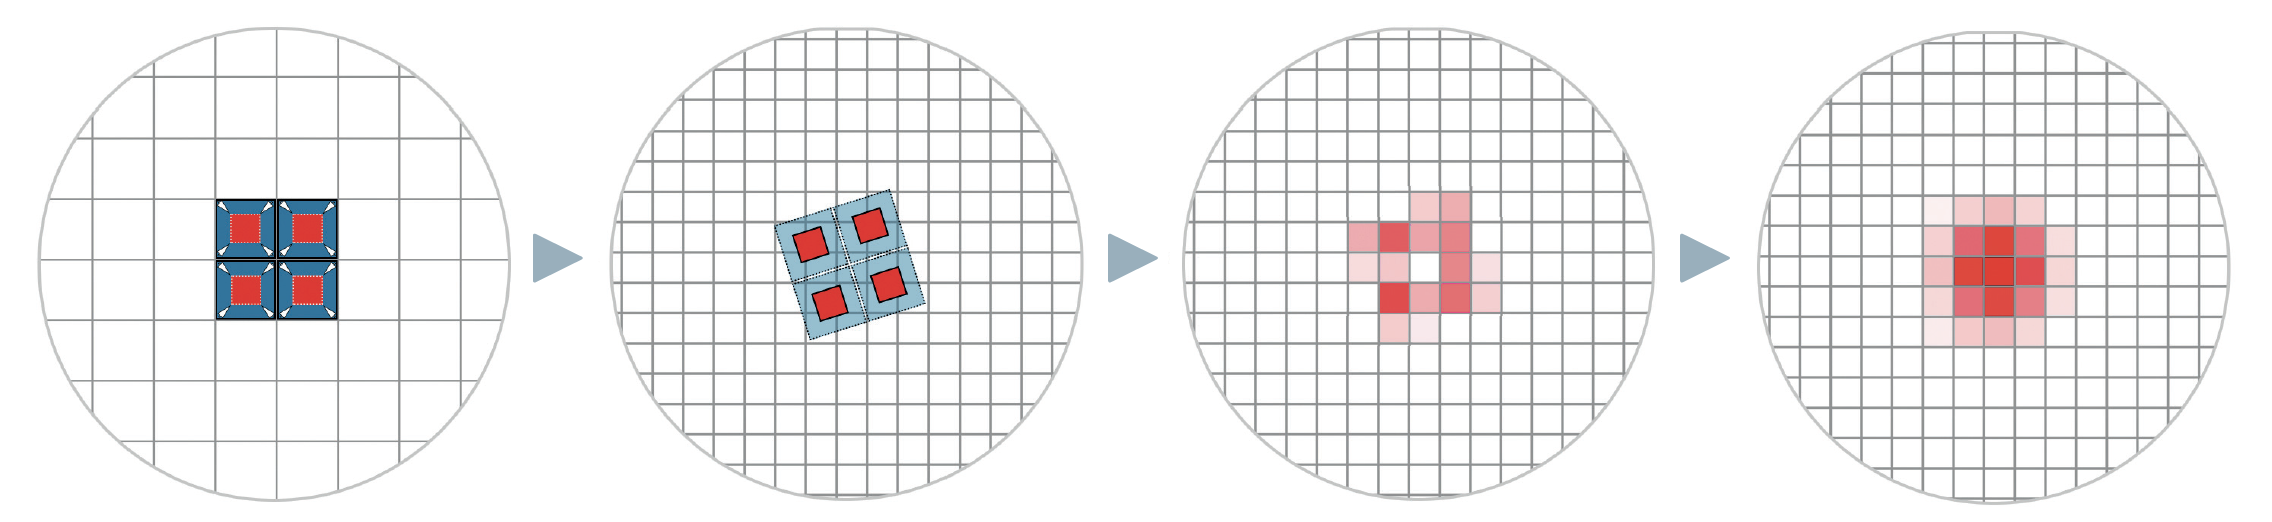 Concernant le principe de fonctionnement de la technique du drizzle : sur l’image gauche, une étoile est placée exactement à l’intersection de quatre pixels et ses valeurs de luminosité se répartissent régulièrement entre les pixels. L’étoile apparaît ainsi pixelisée et son profil à proprement parler n’est pas reproduit. La matrice de pixels originale de l’image (bleue) est alors réduite (rouge) et projetée sur une nouvelle matrice (deuxième image). La nouvelle matrice est ici plus fine à concurrence du facteur 2. Avec une image seulement, on obtient naturellement des vides en certains endroits, comme on peut le voir dans la répartition des valeurs qui en résulte, sur la troisième image. C’est pourquoi de nombreuses images avec des décalages faibles et variables sont nécessaires. Après établissement de leur moyenne, le profil d’étoile n’est mieux représenté que dans le cas idéal (image à droite). M. Weigand